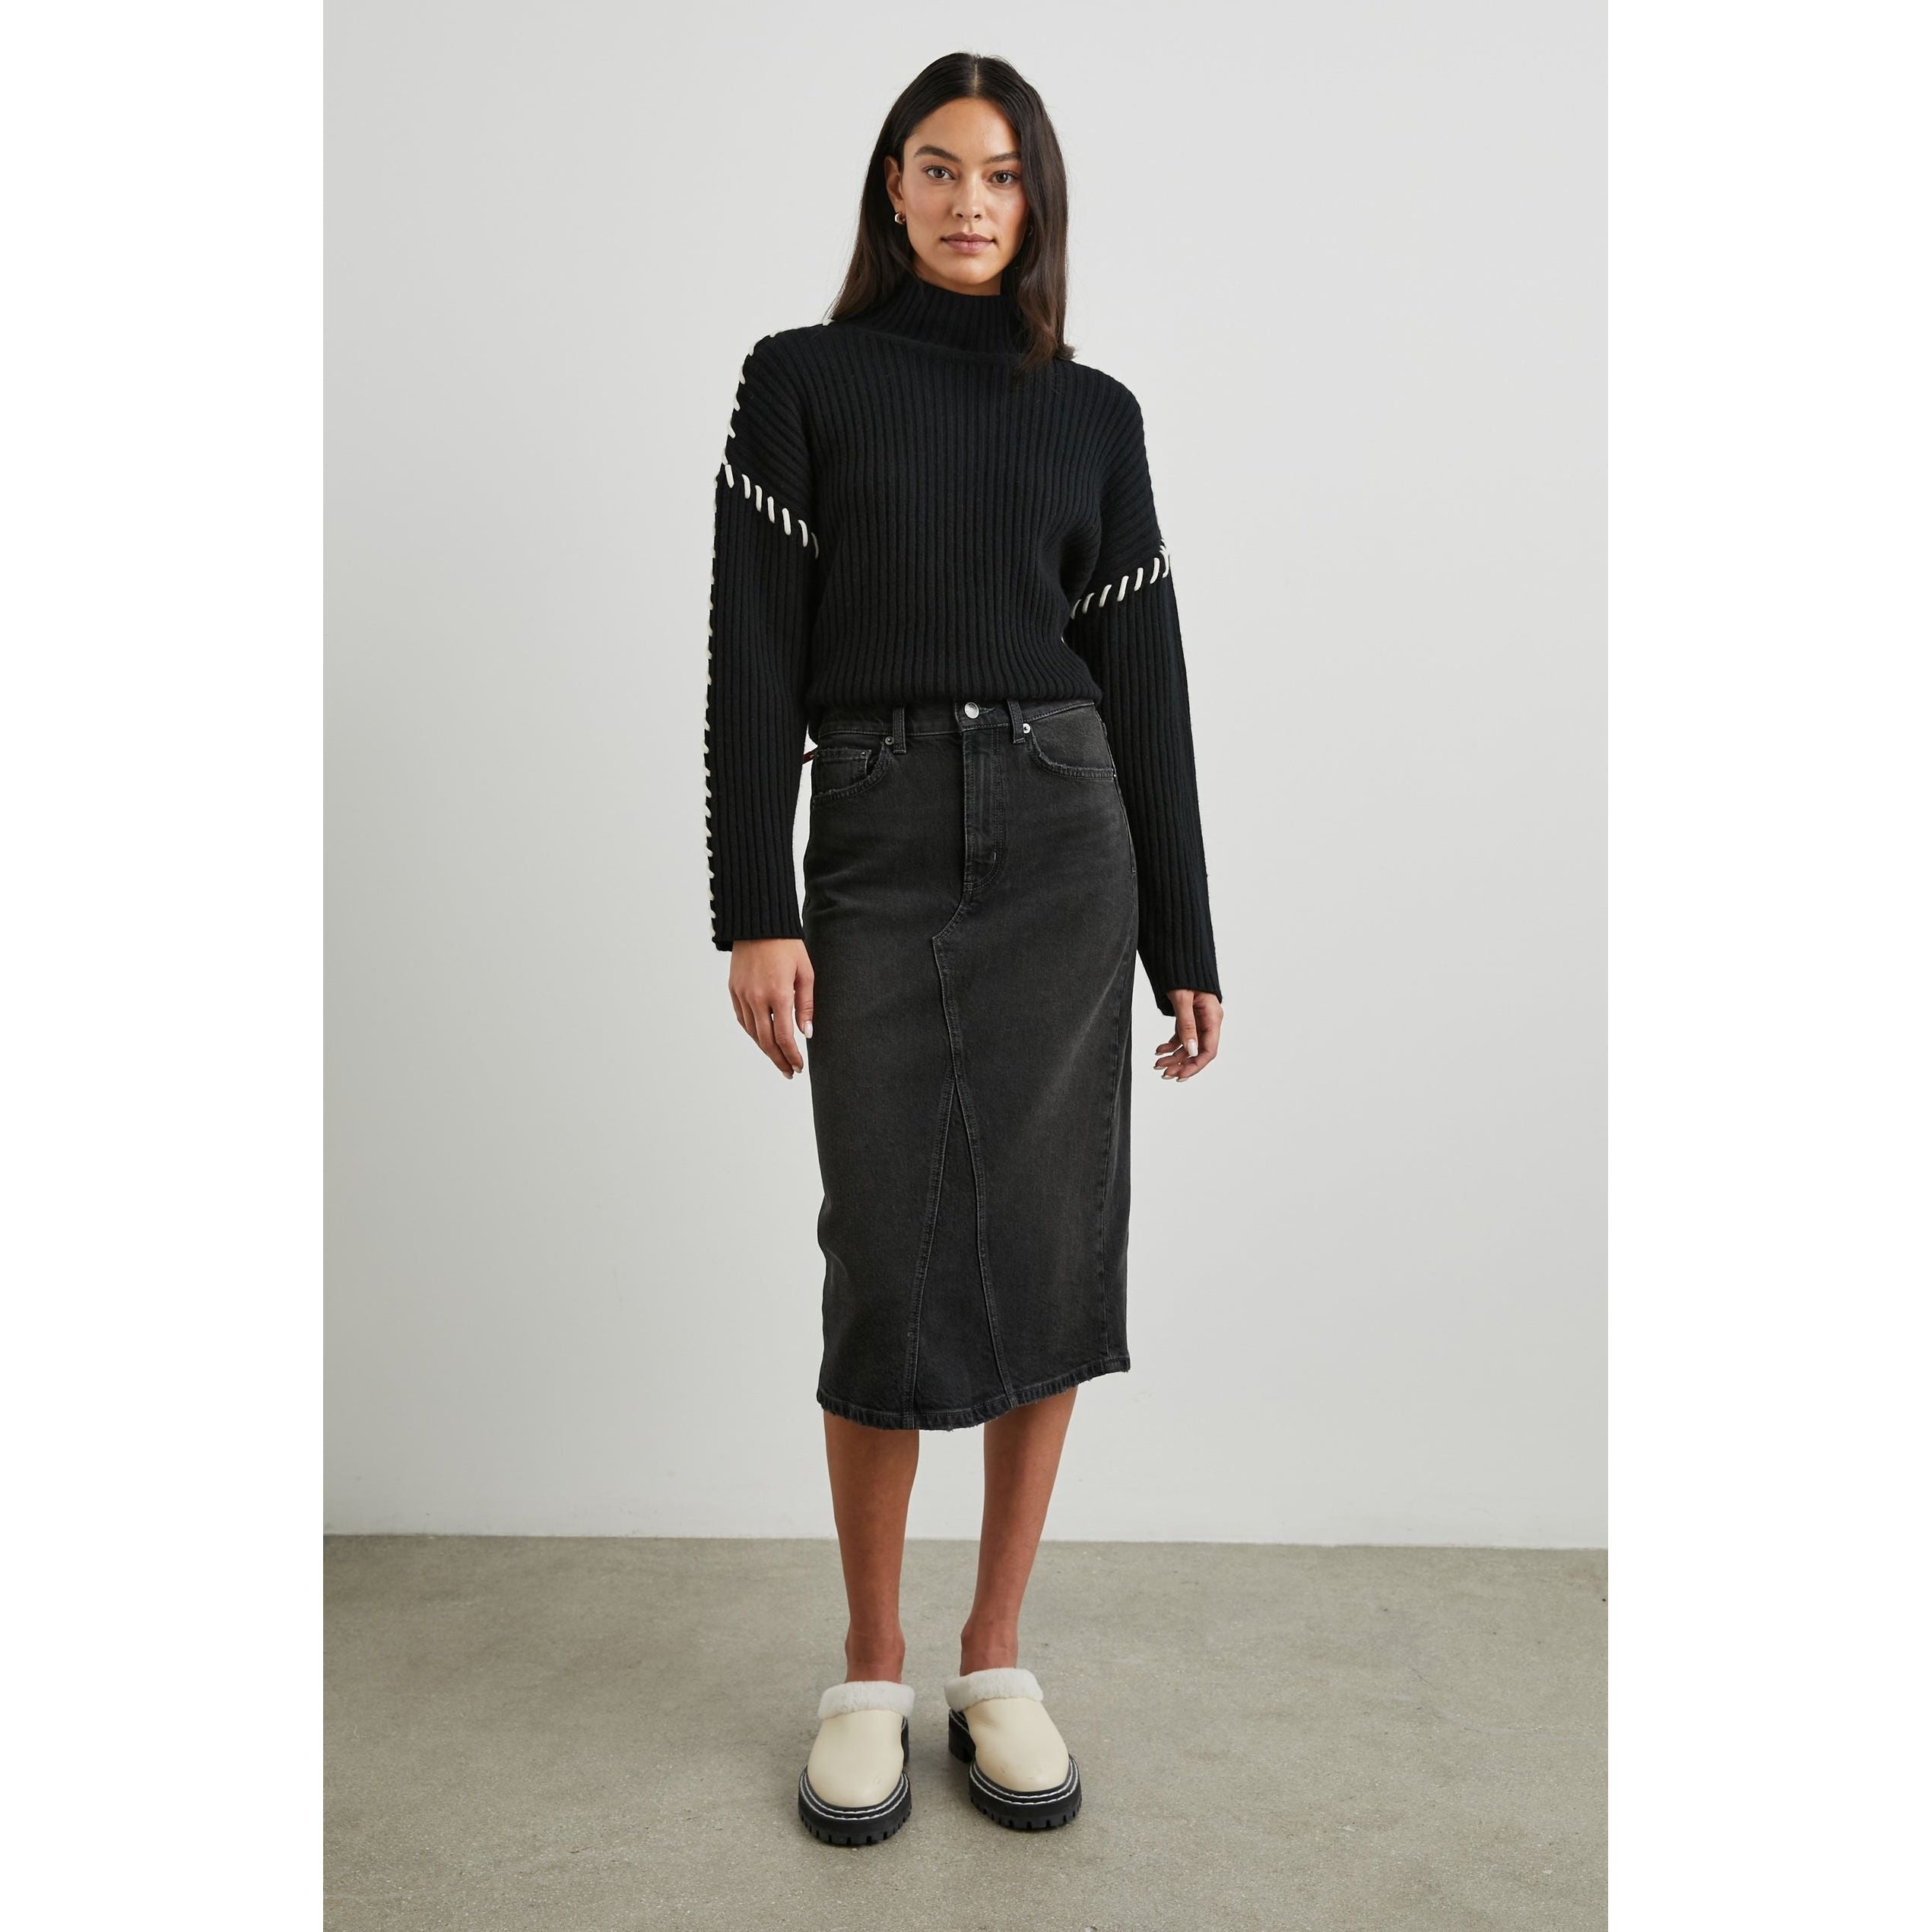 Rails - Highland Denim Skirt in Spellbound-SQ9922151